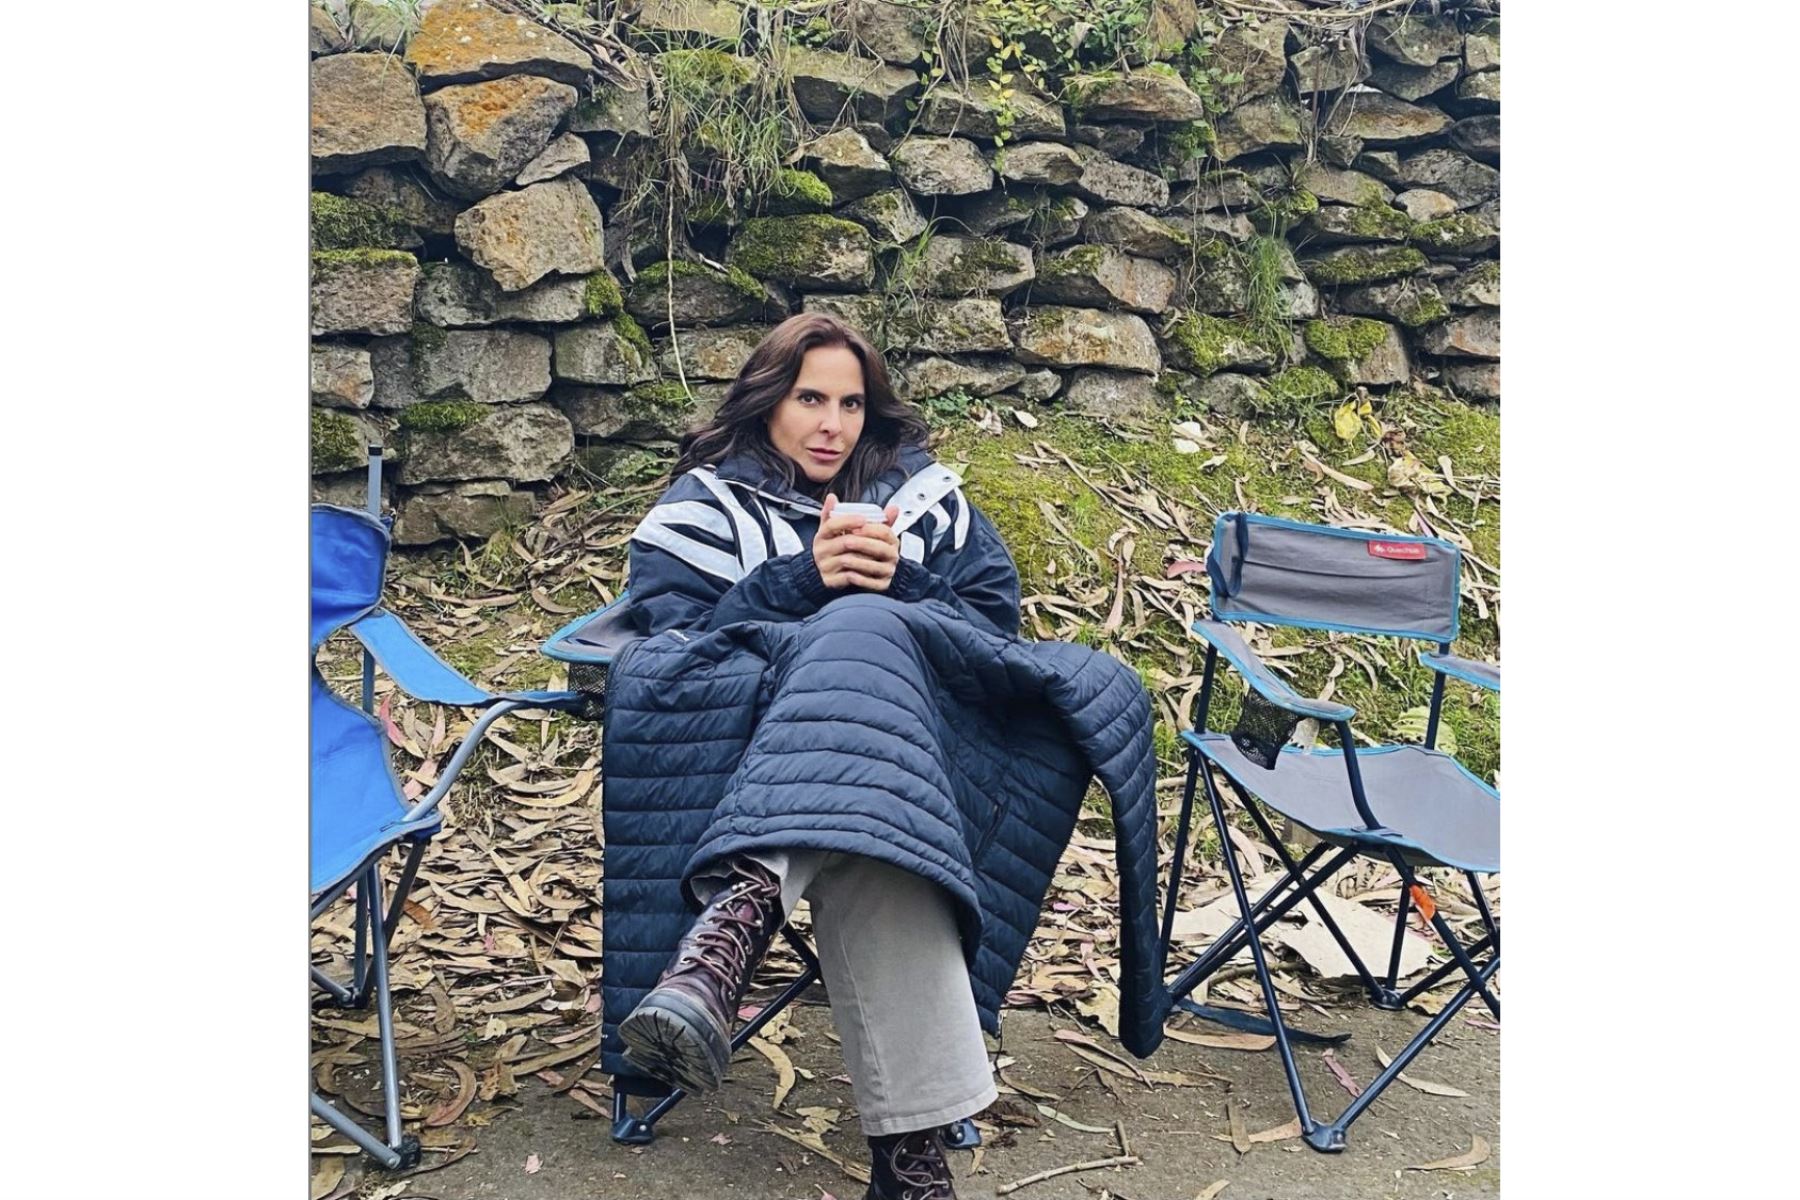 La actriz mexicana Kate del Castillo quedó impresionada con la ciudadela incaica de Machu Picchu y no dudó en demostrarlo en un video que subió a su cuenta de Instagram catalogando al santuario de un “set privilegiado gigante”. Foto: Instagram/Kate del Castillo oficial.